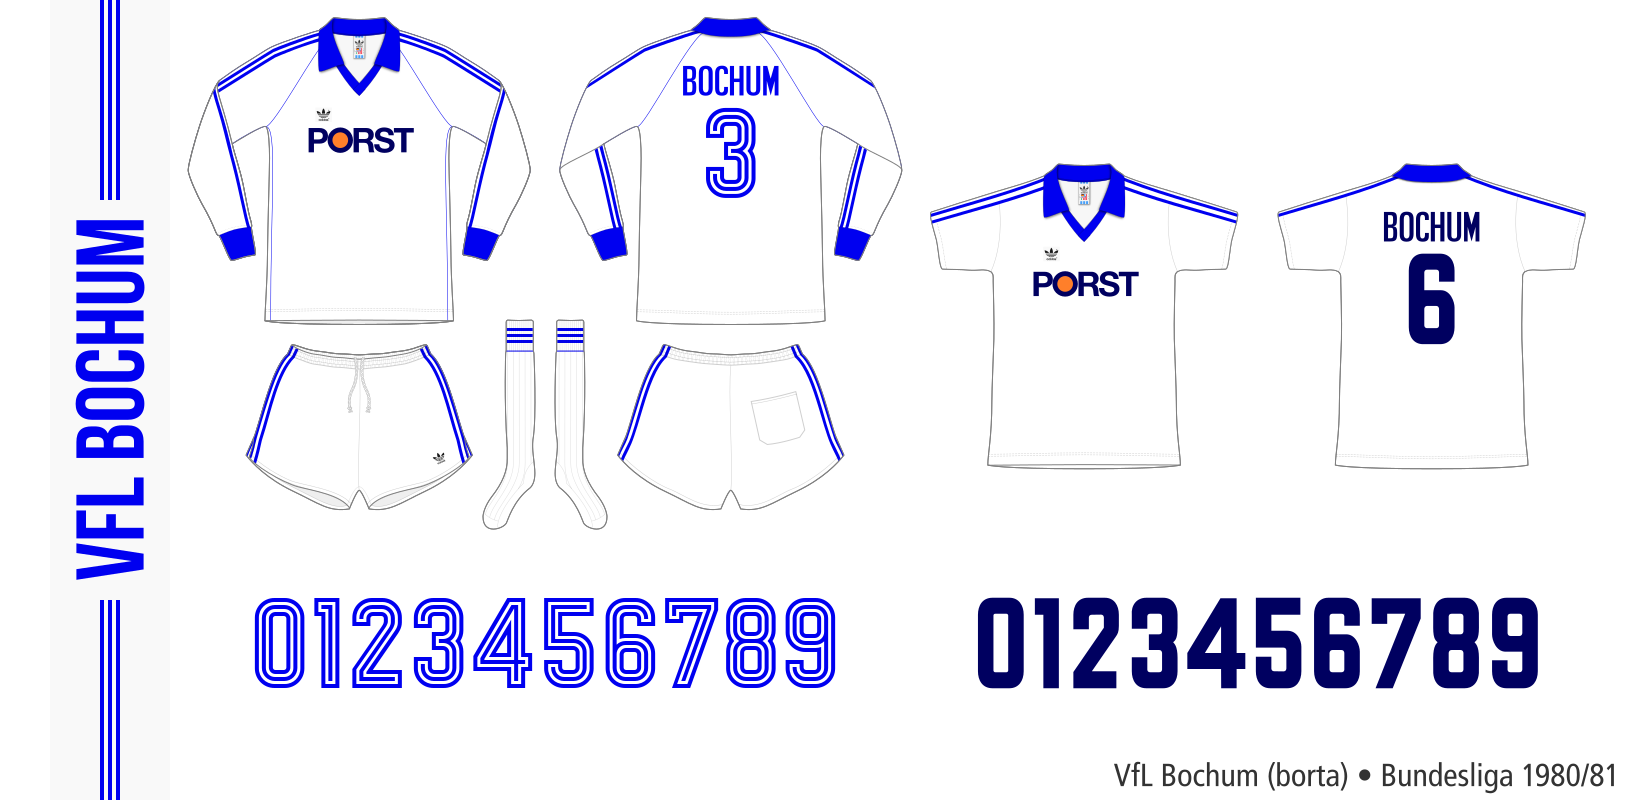 VfL Bochum 1980/81 (borta)